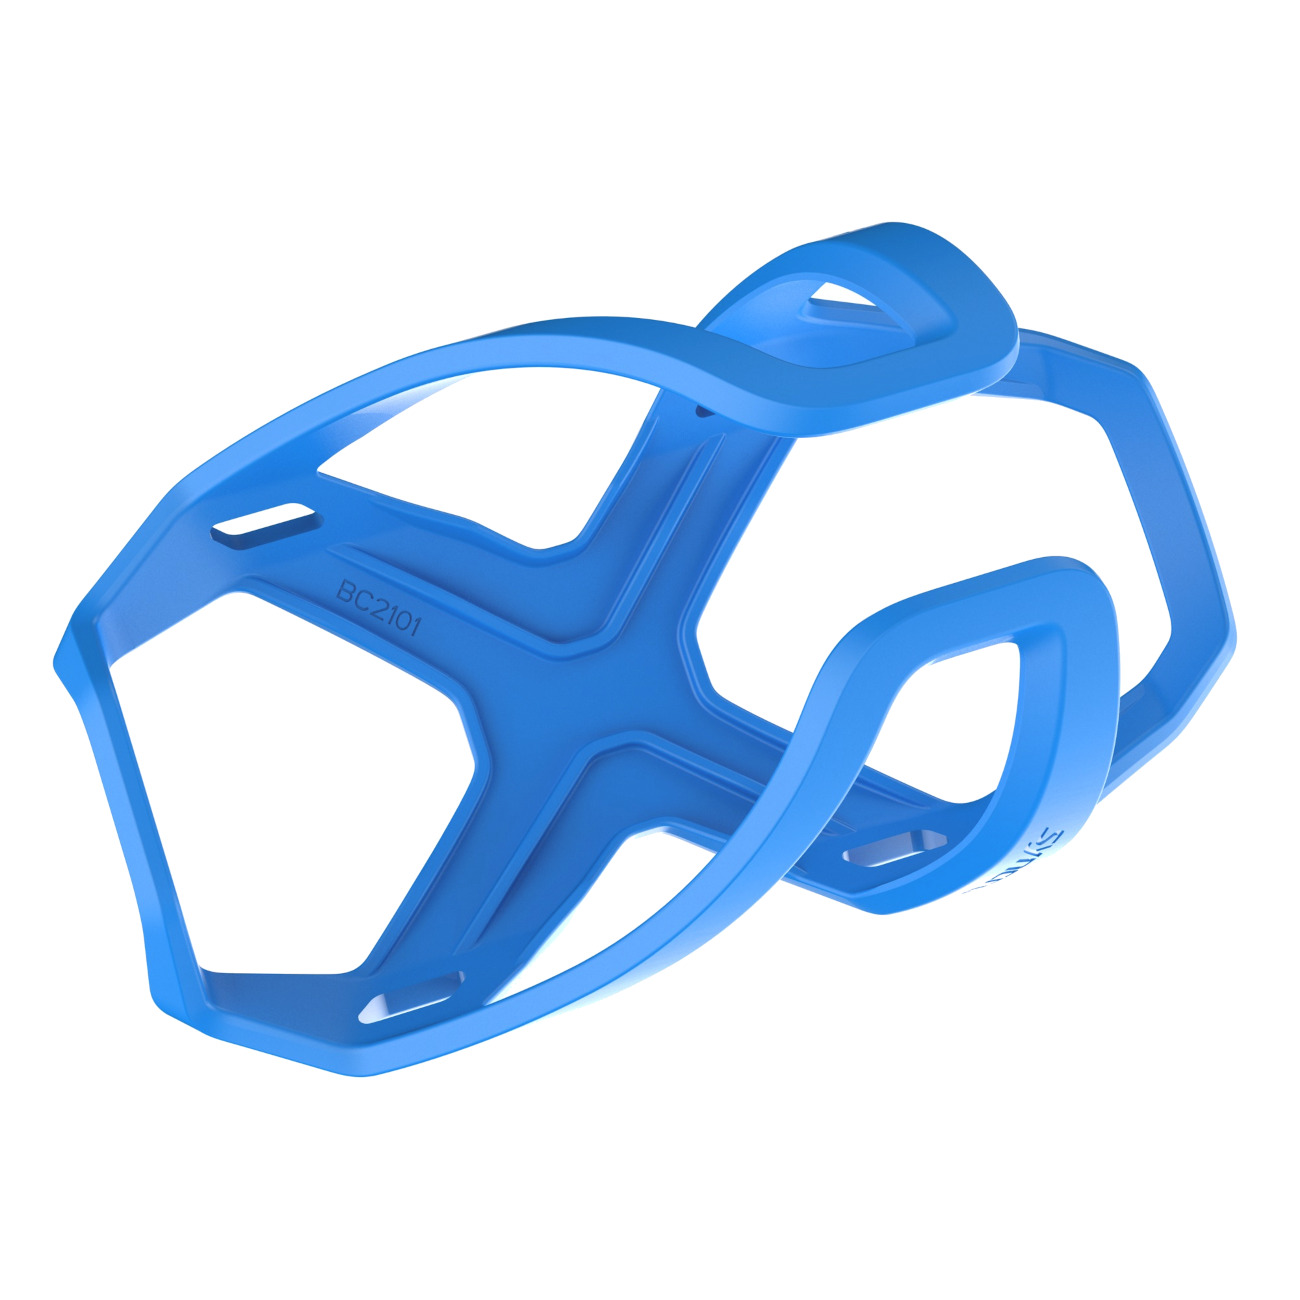 Produktbild von Syncros Tailor Cage 3.0 Flaschenhalter - blau